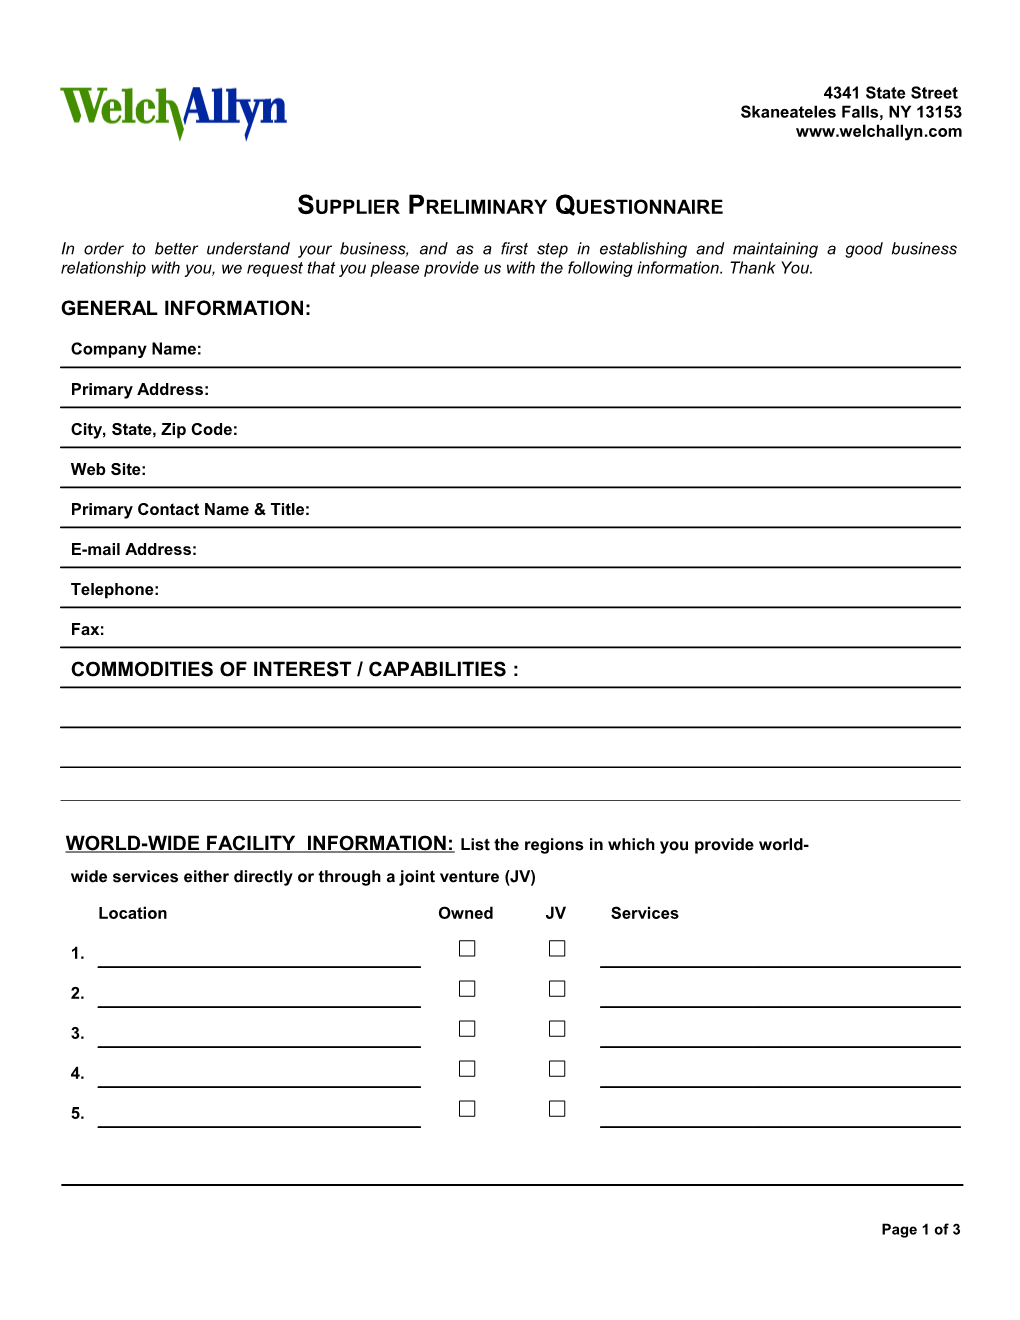 Supplier Questionnaire Form